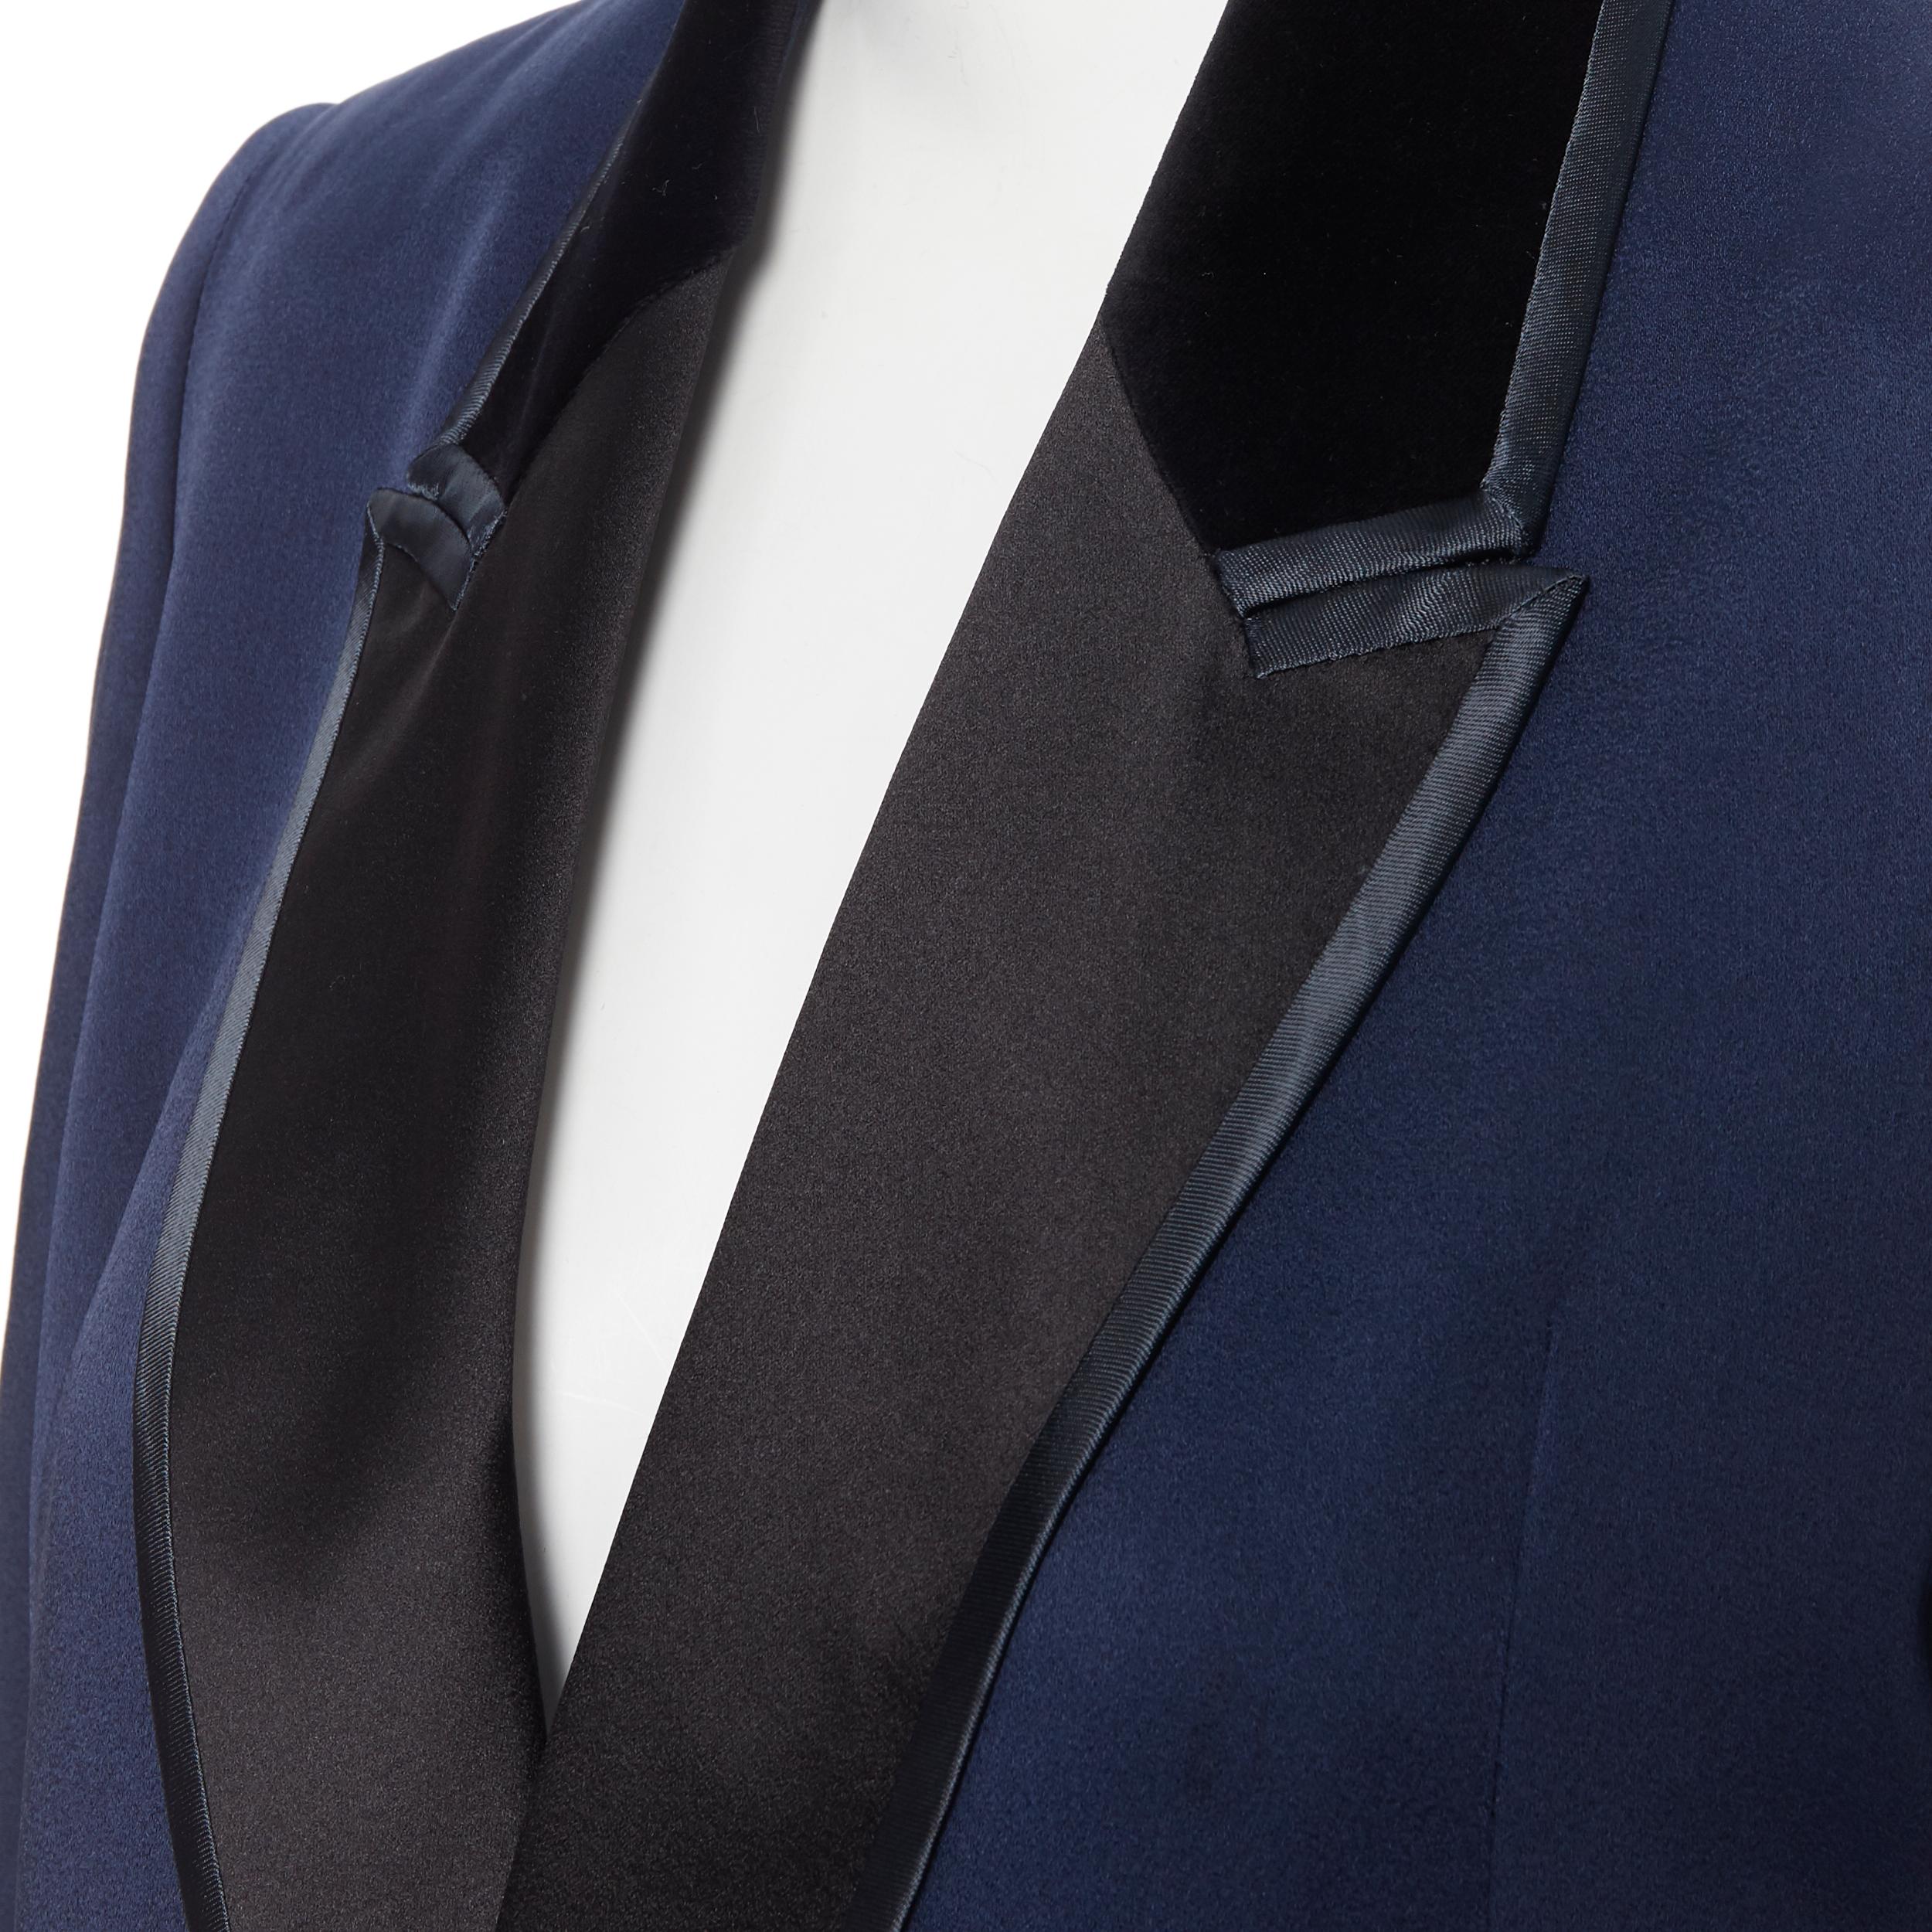 GIORGIO ARMANI Underwear black viscose long sleeve minimal body top IT40 S
Brand: Giorgio Armani
Designer: Giorgio Armani
Model Name / Style: Bodysuit 
Material: Viscose
Color: Black
Pattern: Solid
Extra Detail: Bodysuit top. Long sleeve. Round neck